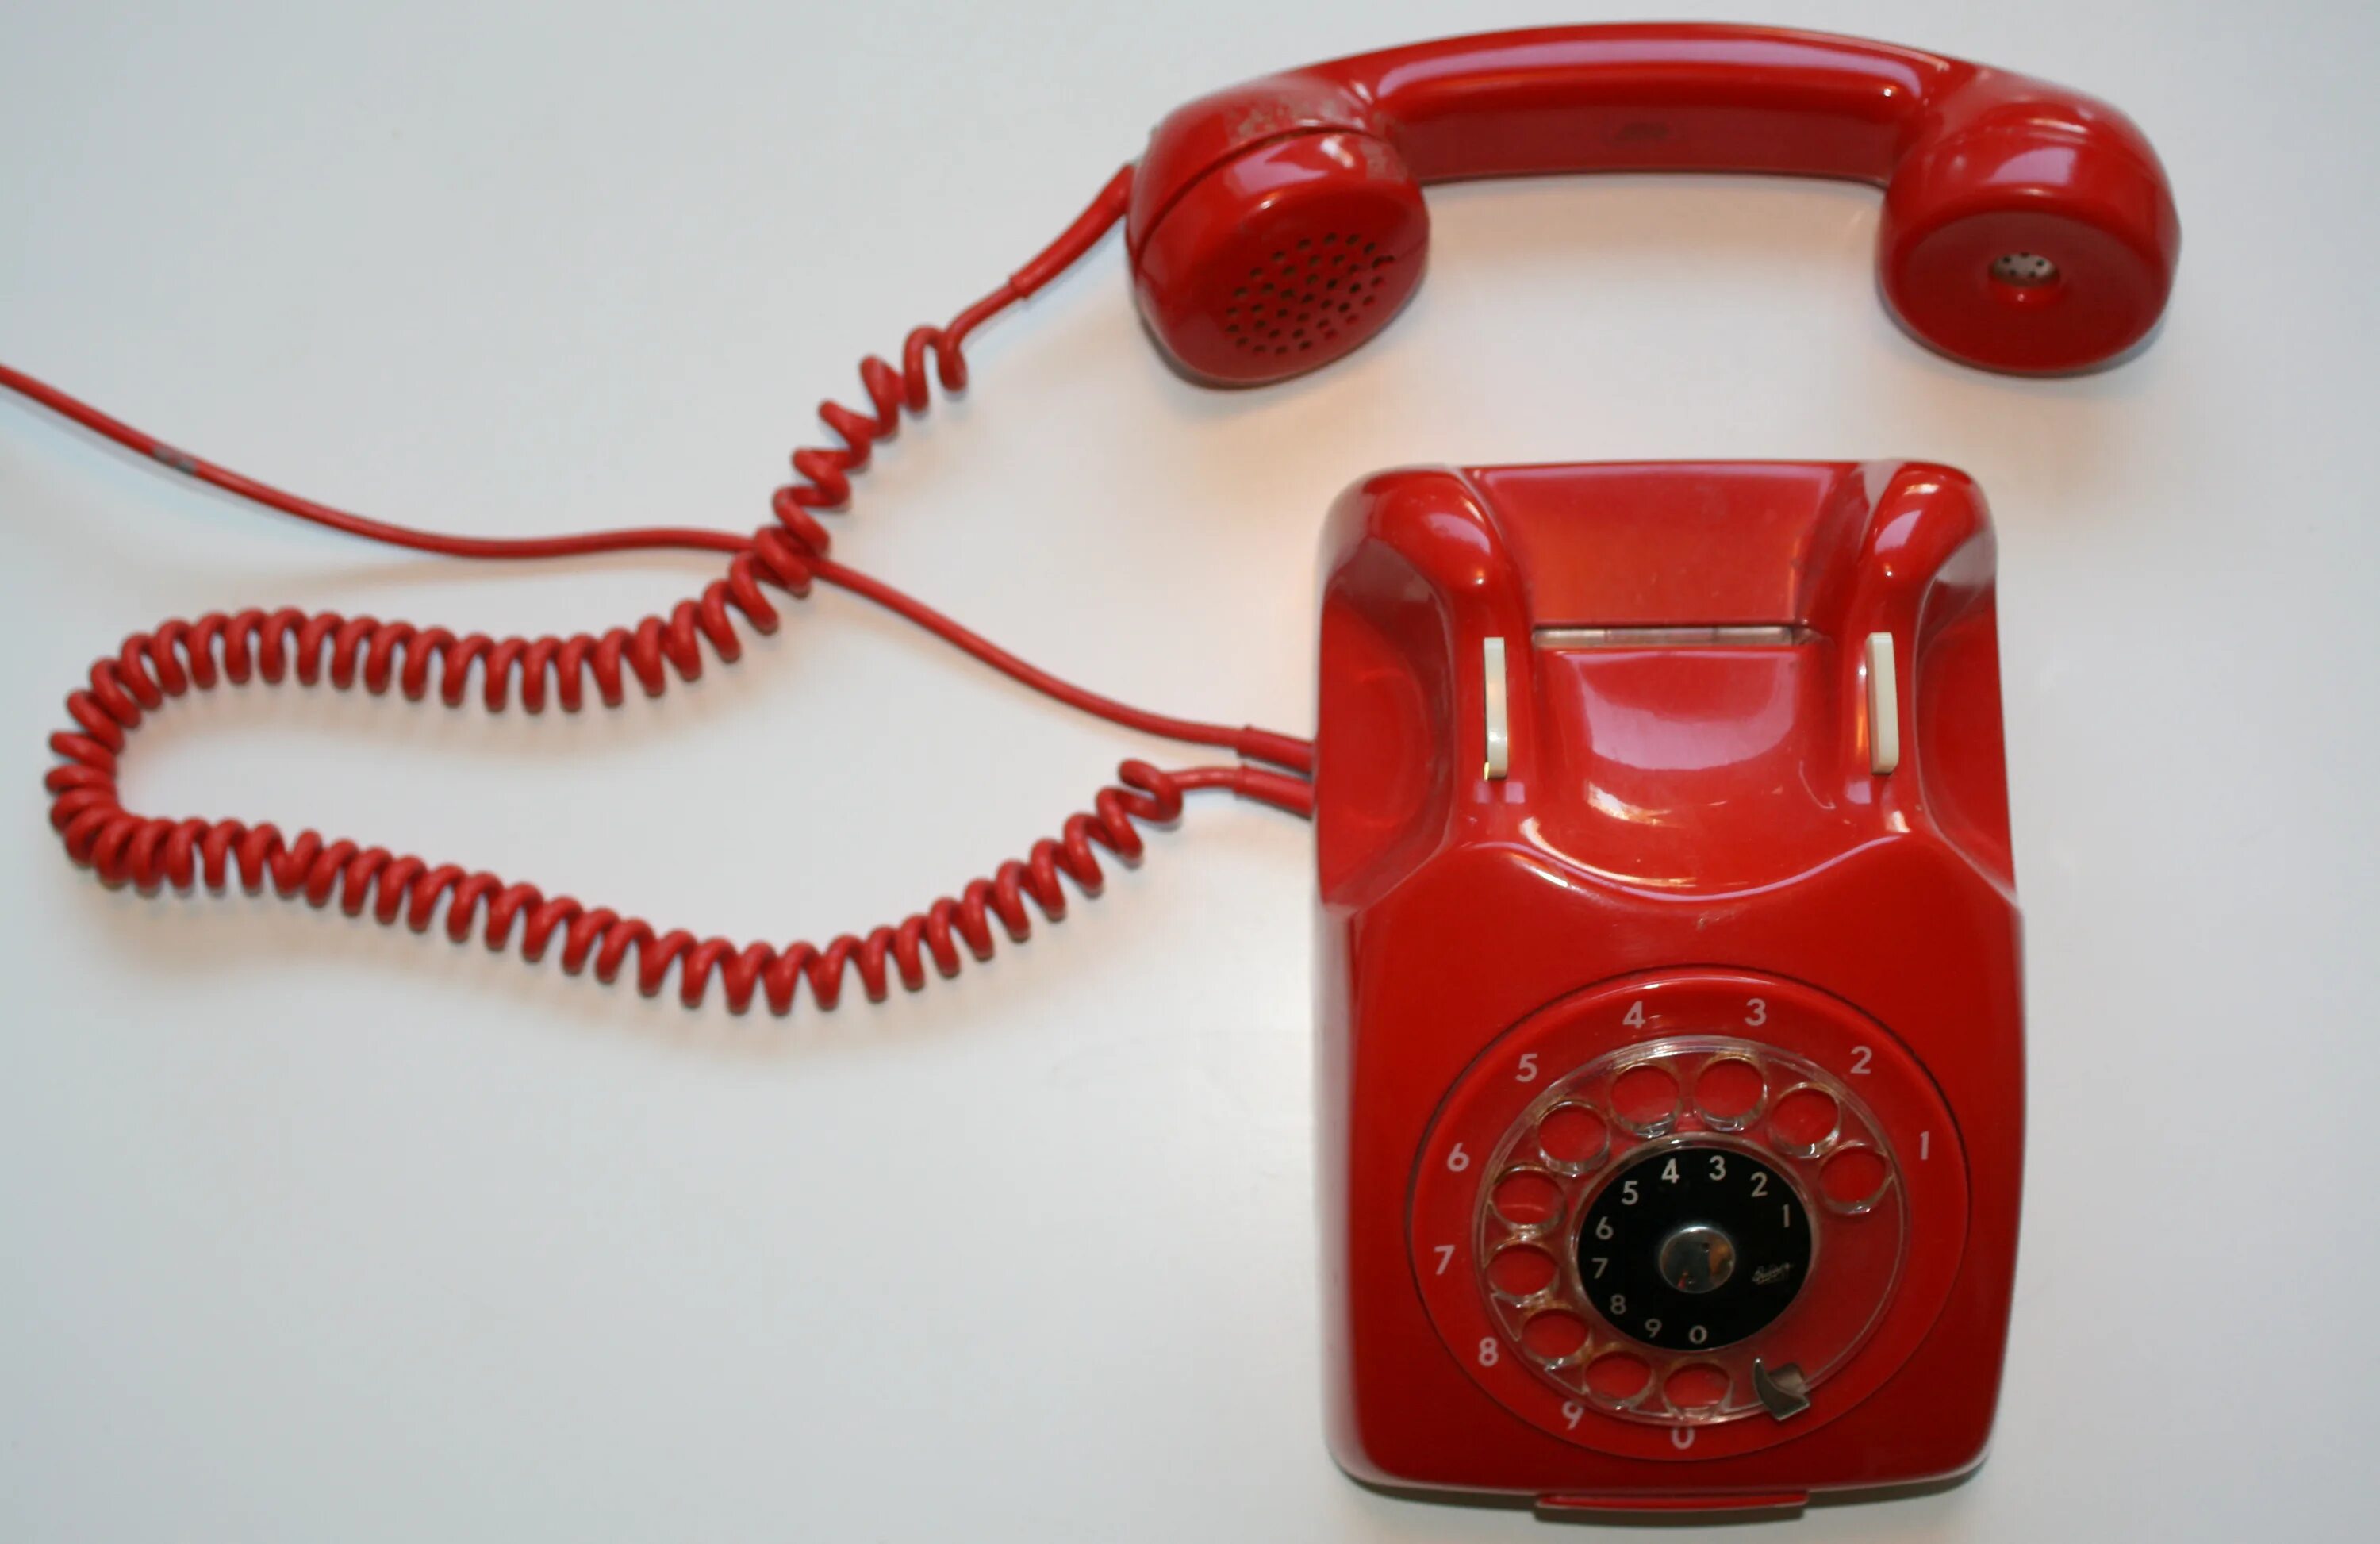 Ооо красный телефон. Красный телефон. Красный телефон современный. Телефон Alcatel красный старый. Красная телефонная трубка ретро.